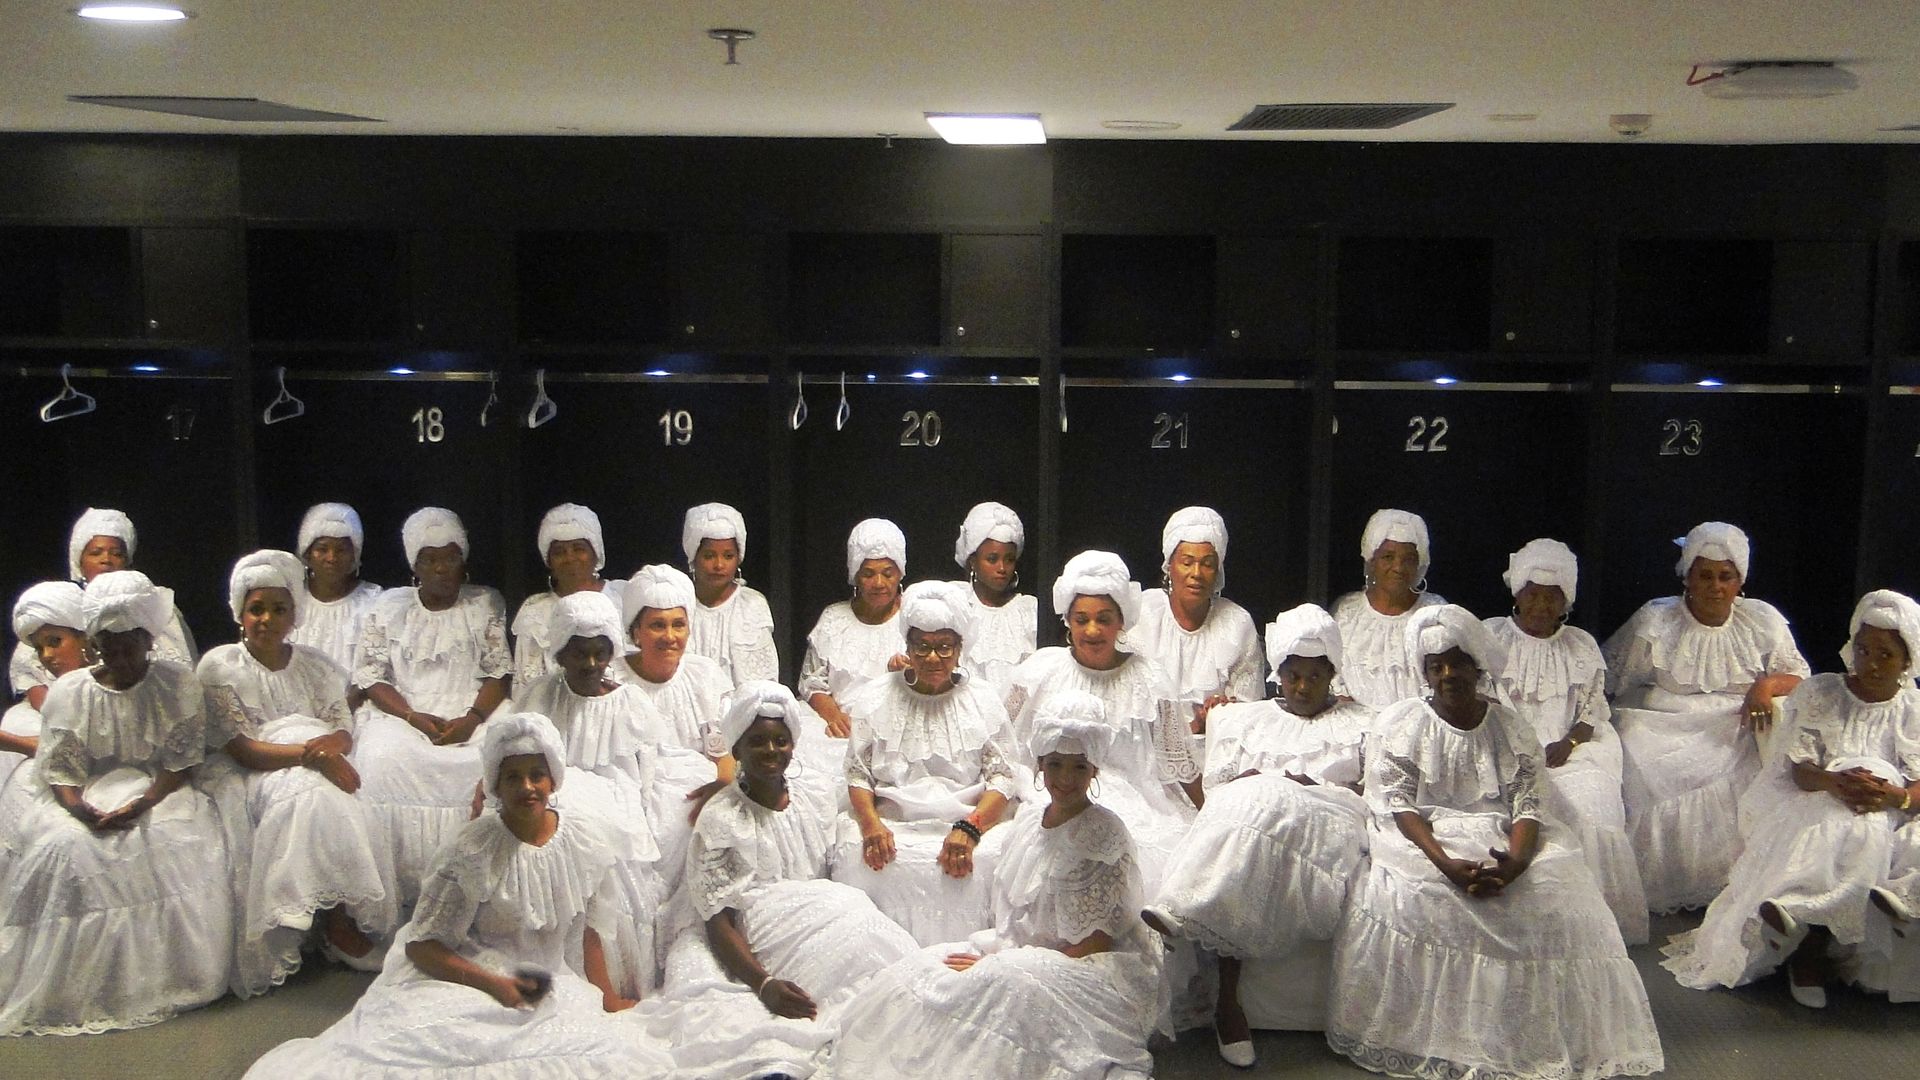 Ganhadeiras de Itapuã com vestidos e torsos brancos nas Olímpiadas do Rio de Janeiro.